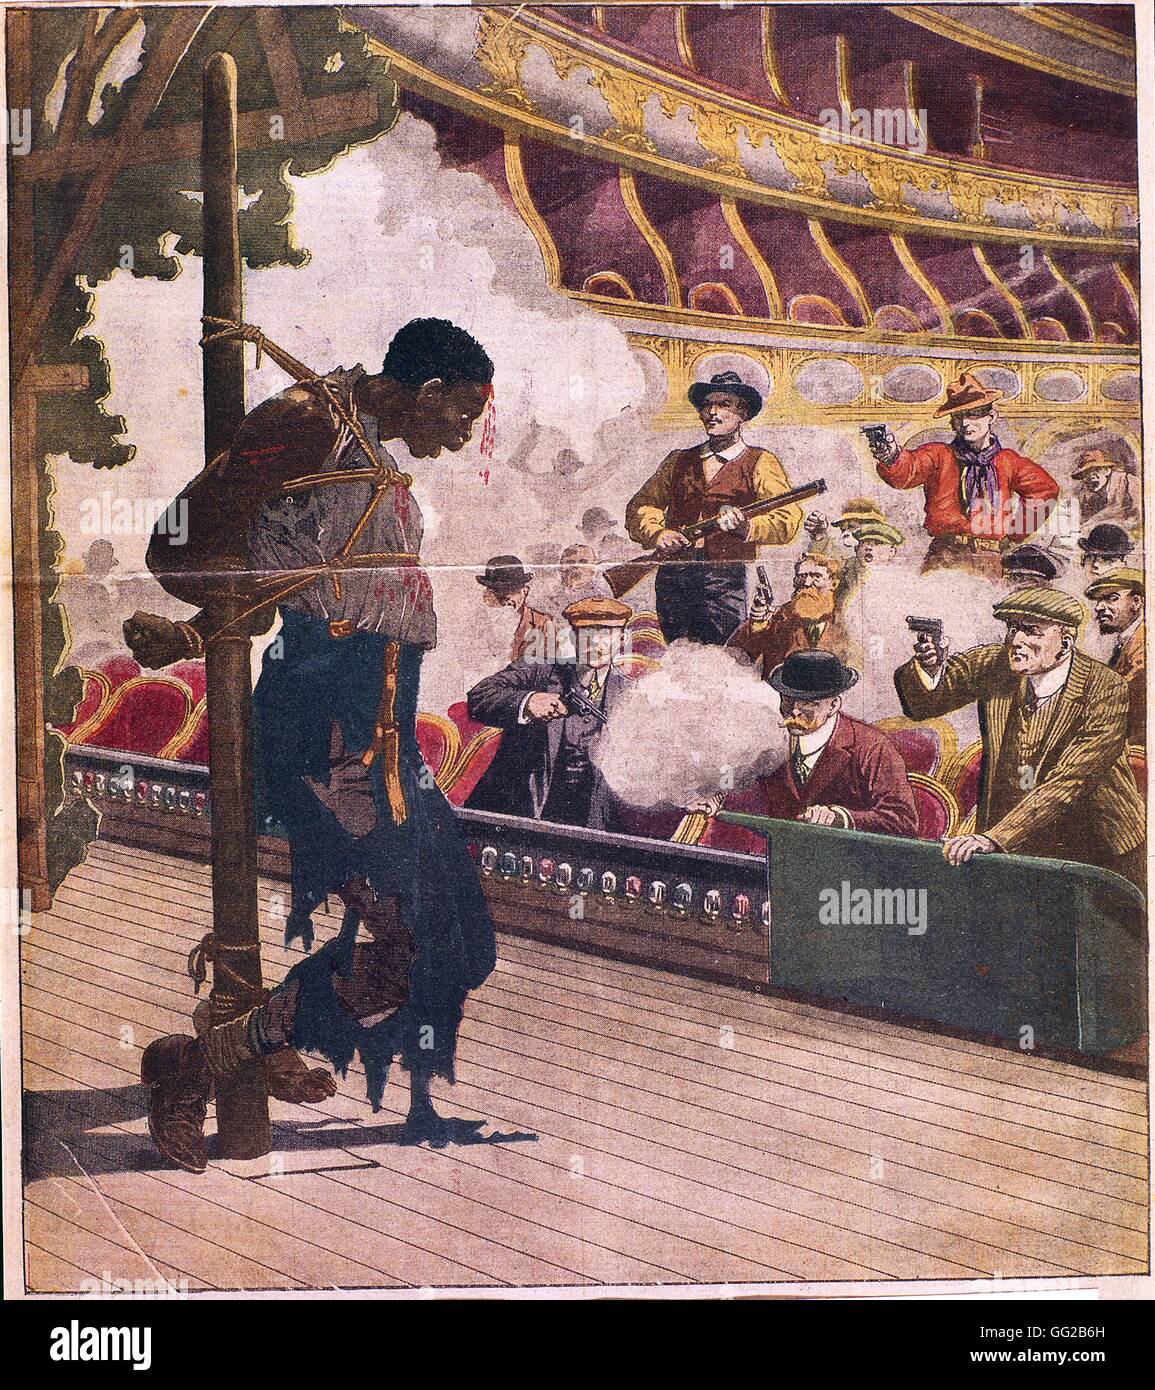 El linchamiento en Livermore un hombre negro, atado a un poste en el escenario de la ópera, está siendo tiroteados por hombres blancos de Kentucky, Estados Unidos, 1902 Foto de stock